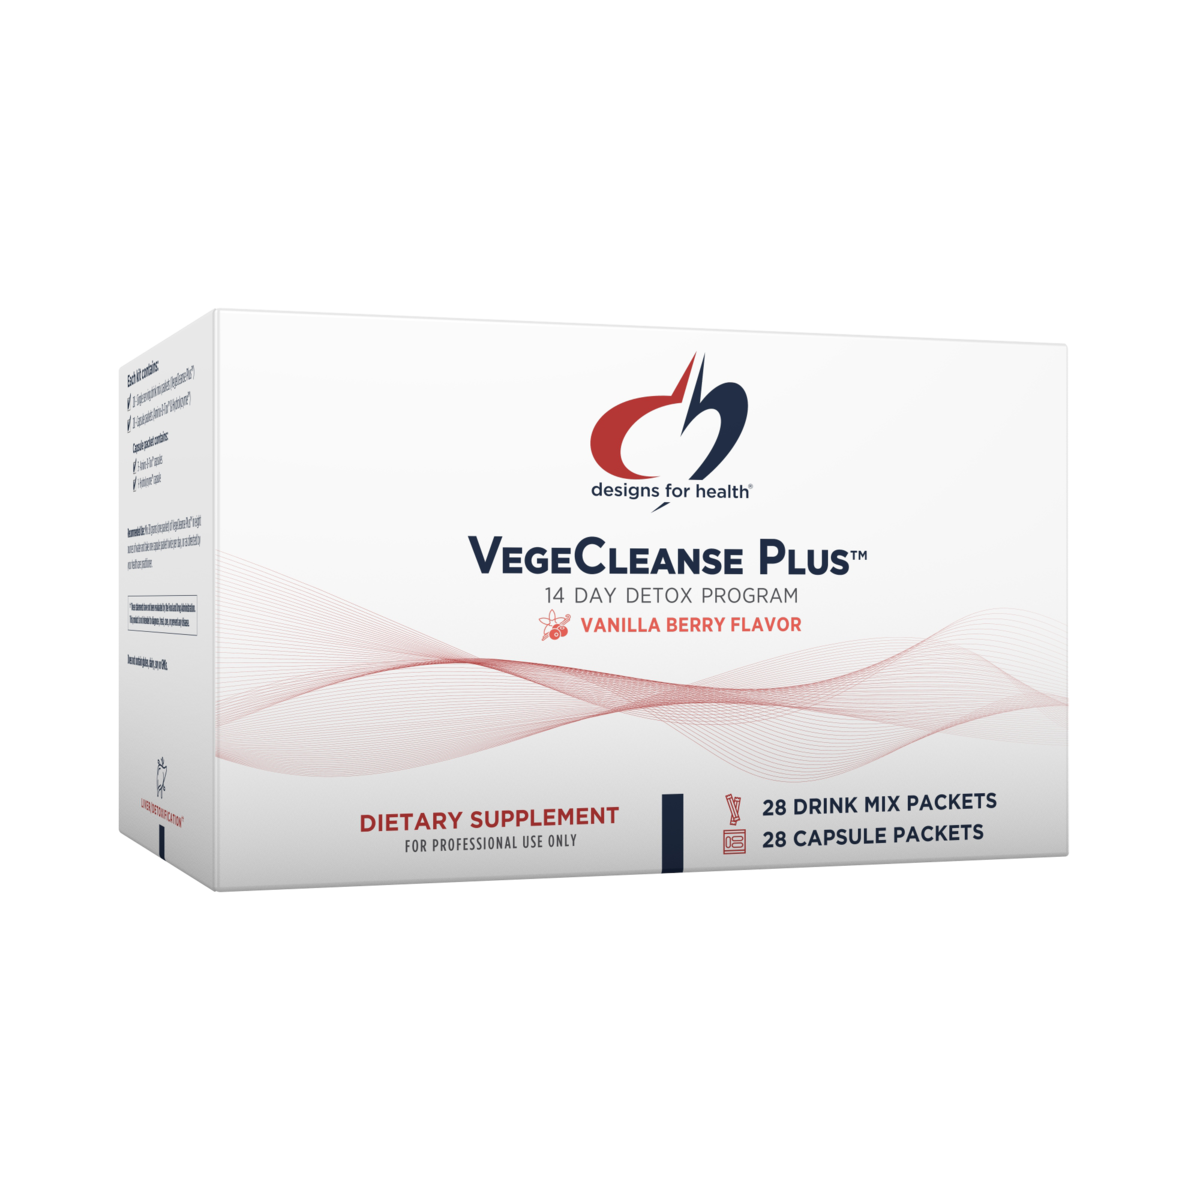 VegeCleanse Plus™ Detox Program